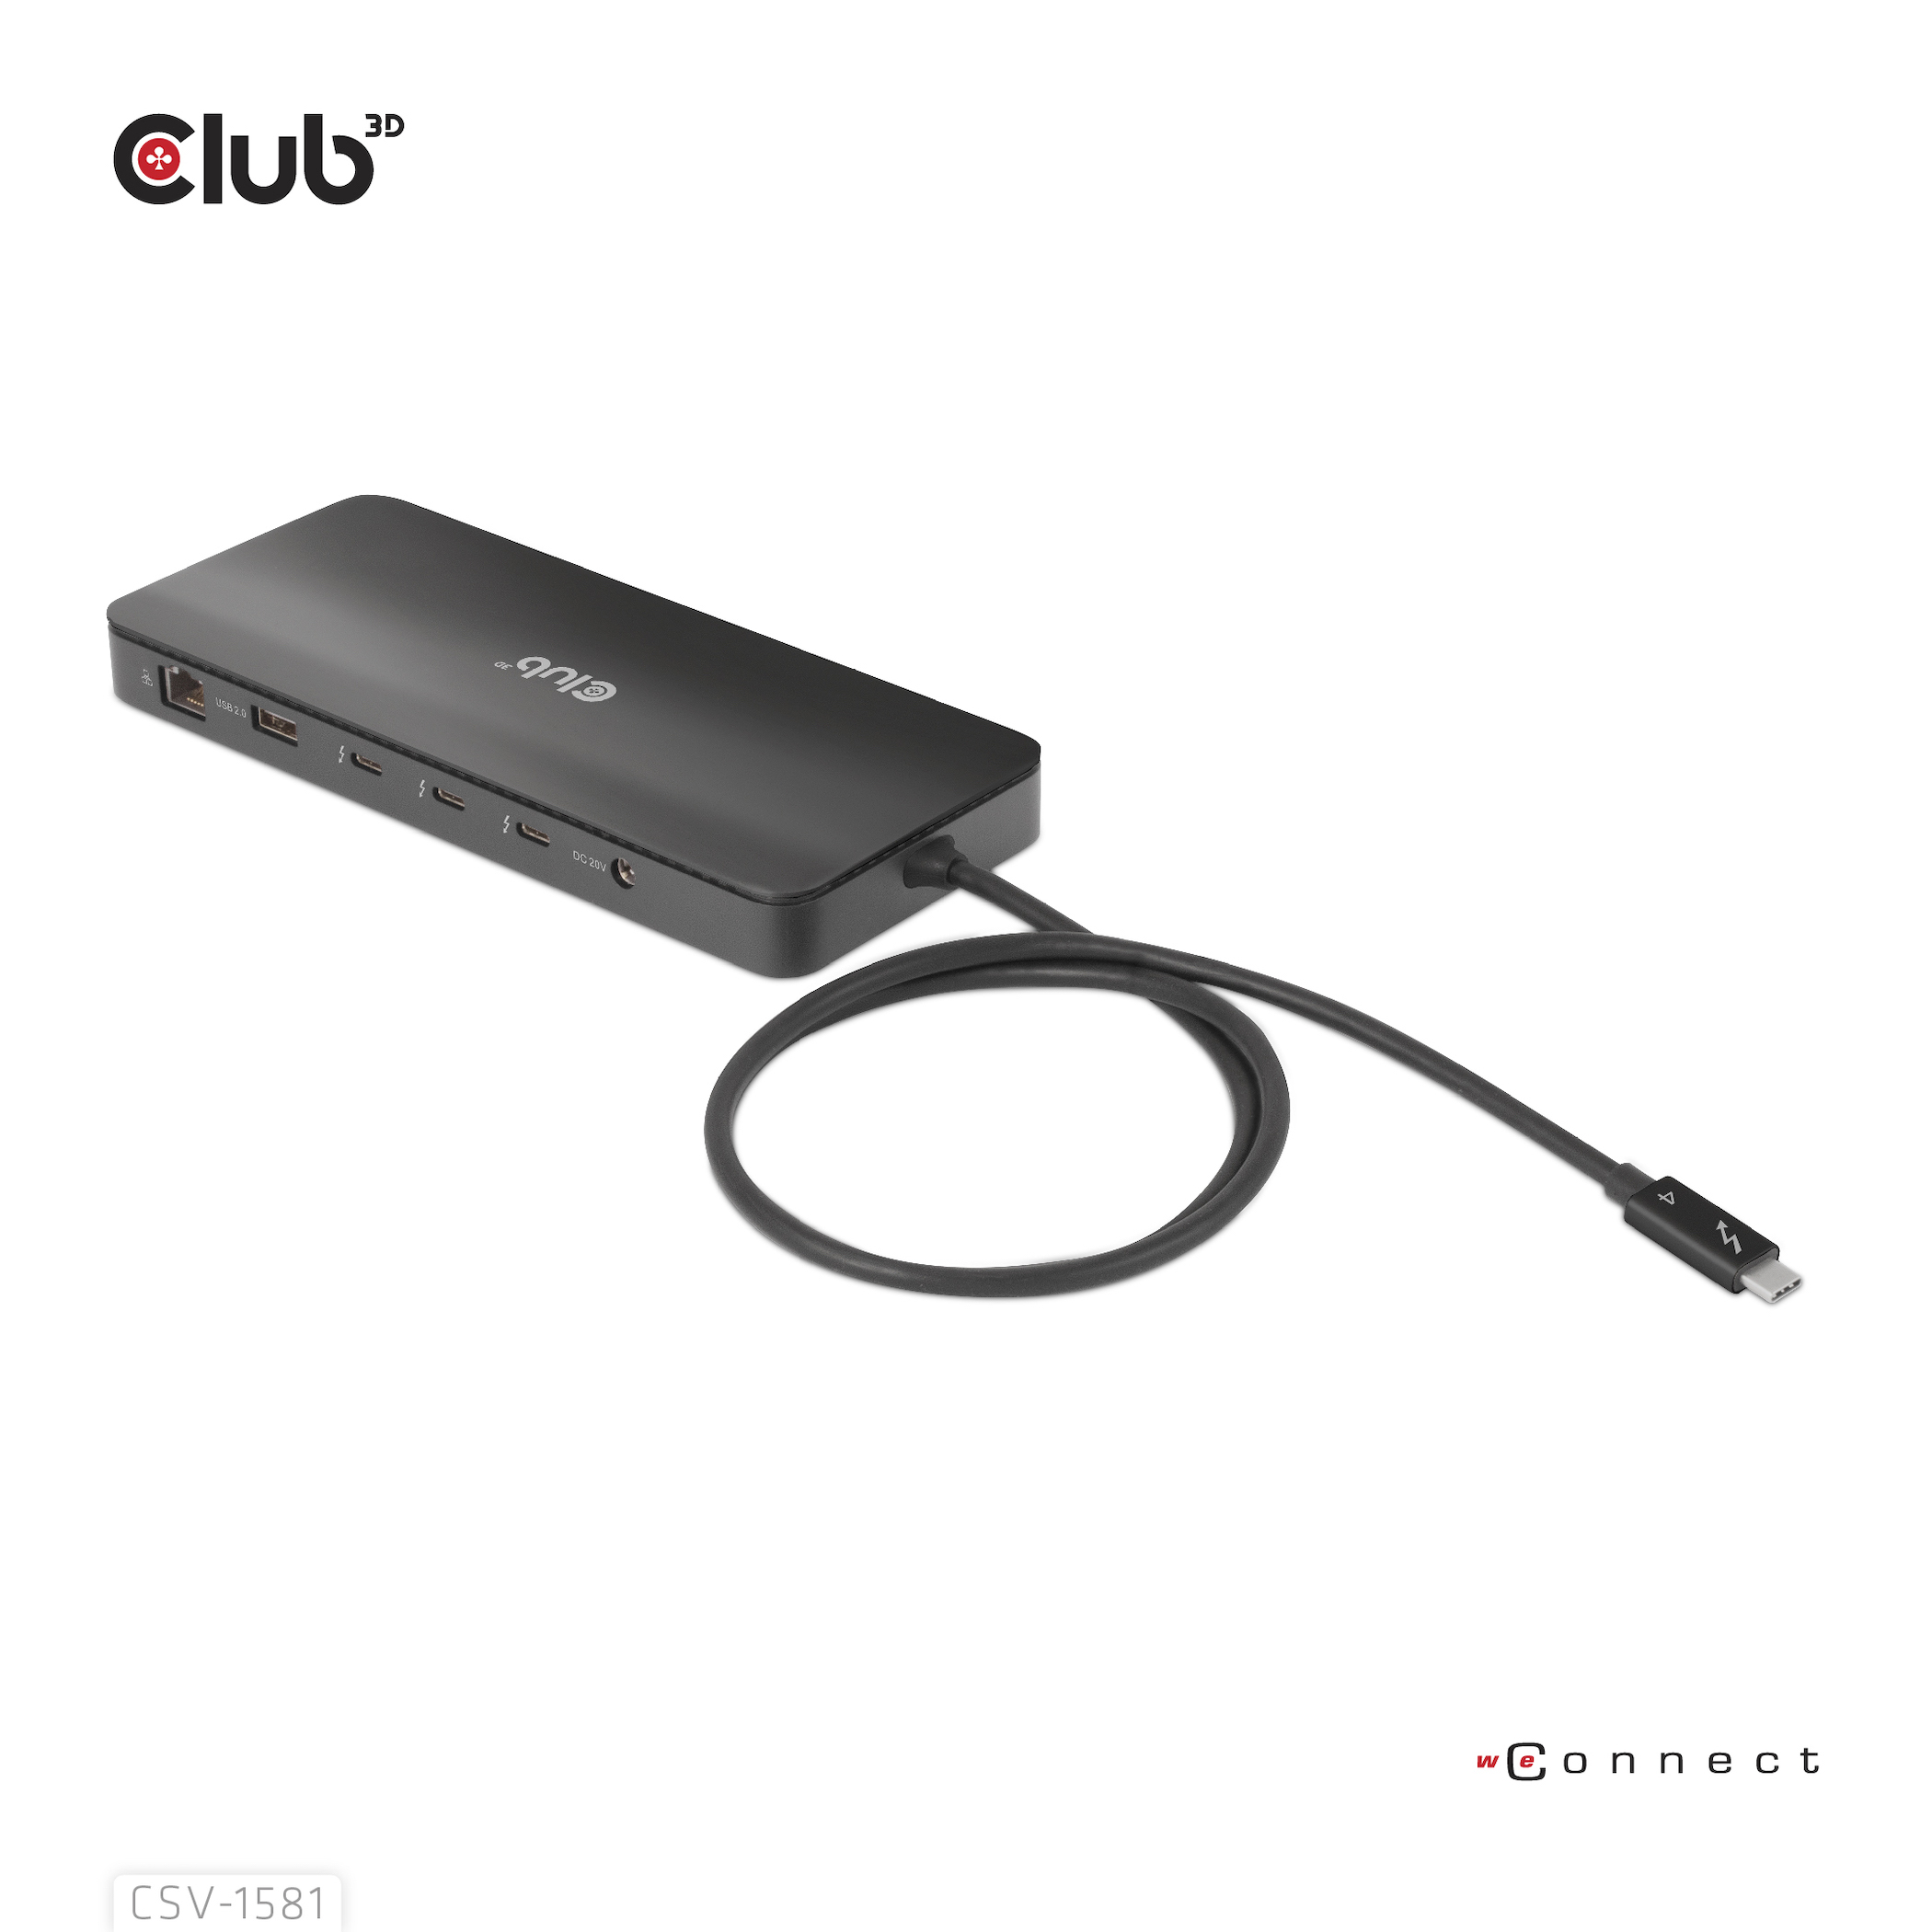 Club 3D Dockingstation - USB-C / Thunderbolt 3 / Thunderbolt 4